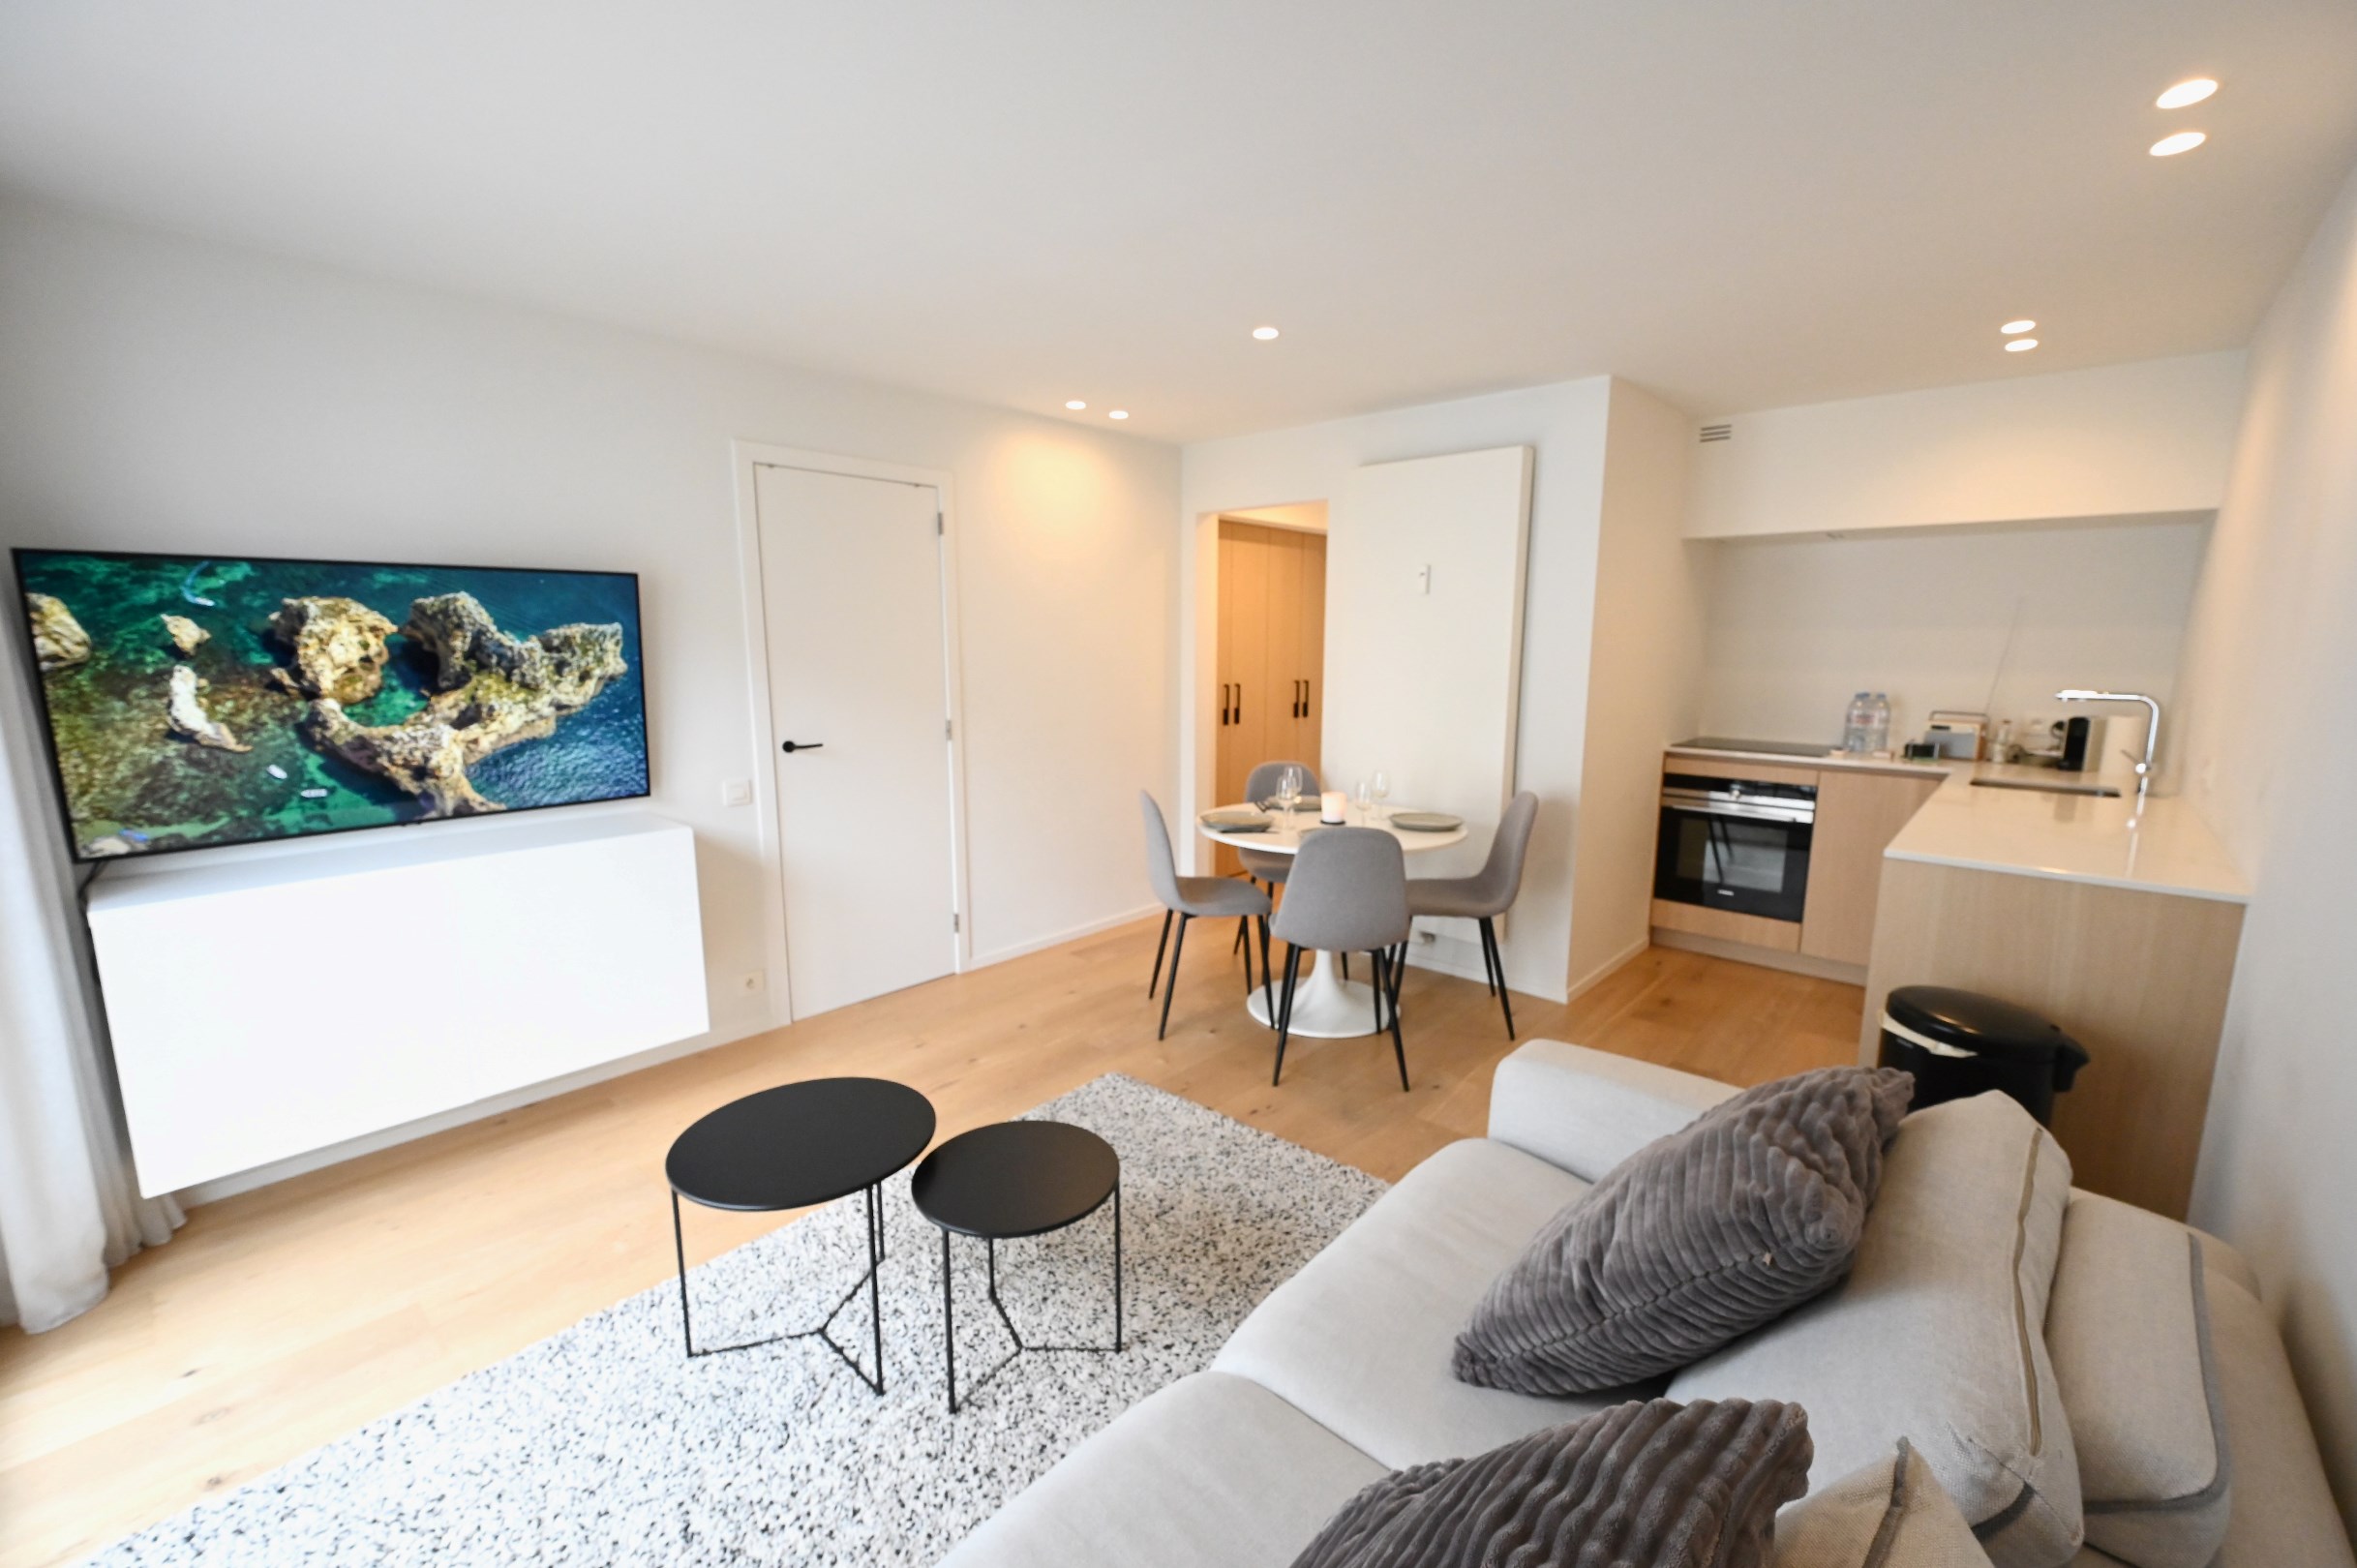 GEMEUBELD  - Modern gerenoveerd 1 slaapkamer appartement gelegen in de centrum van Knokke. 